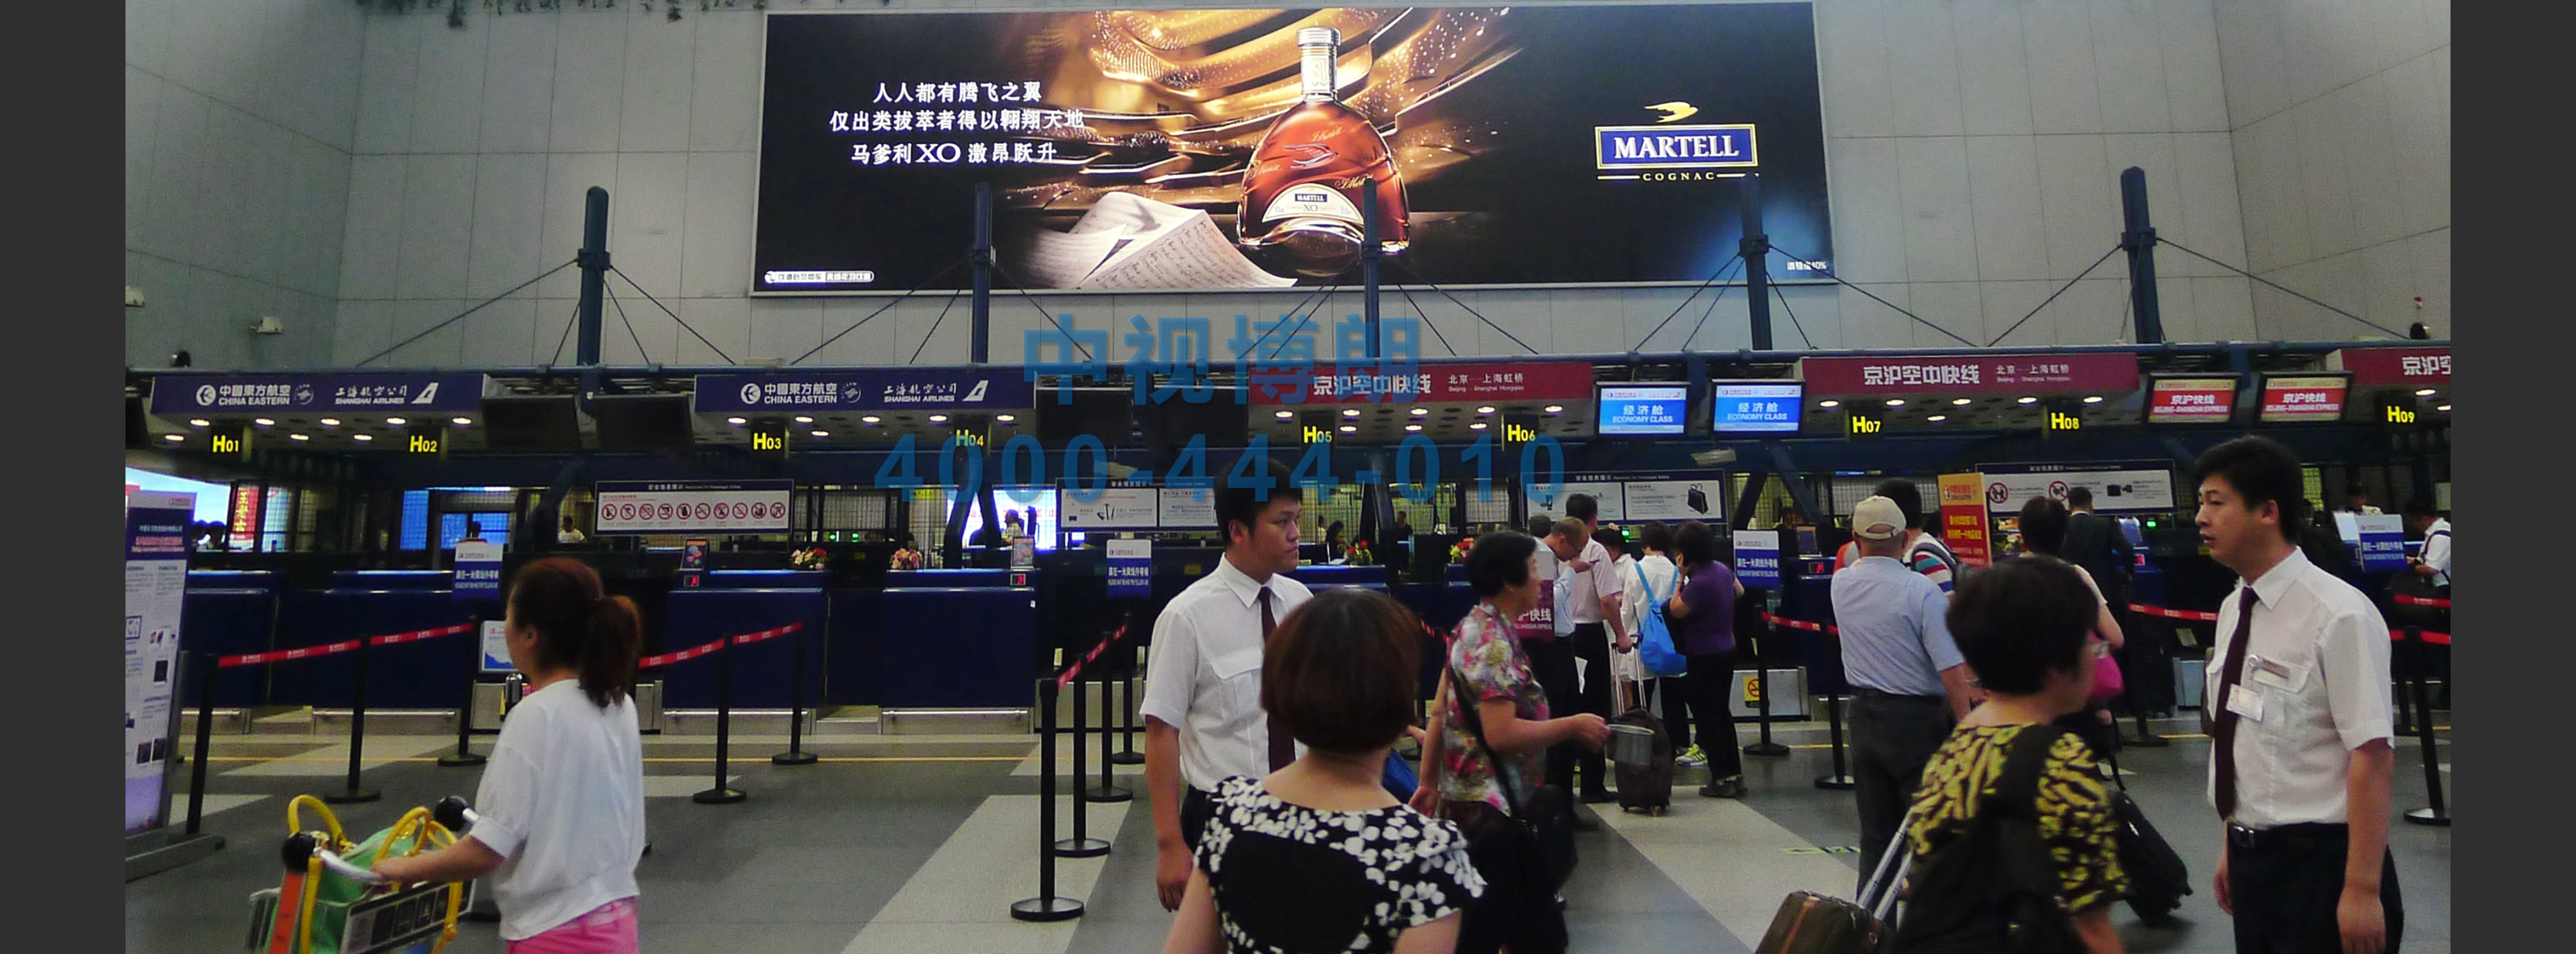 北京首都机场广告-T2国内出发值机厅高处灯箱1B